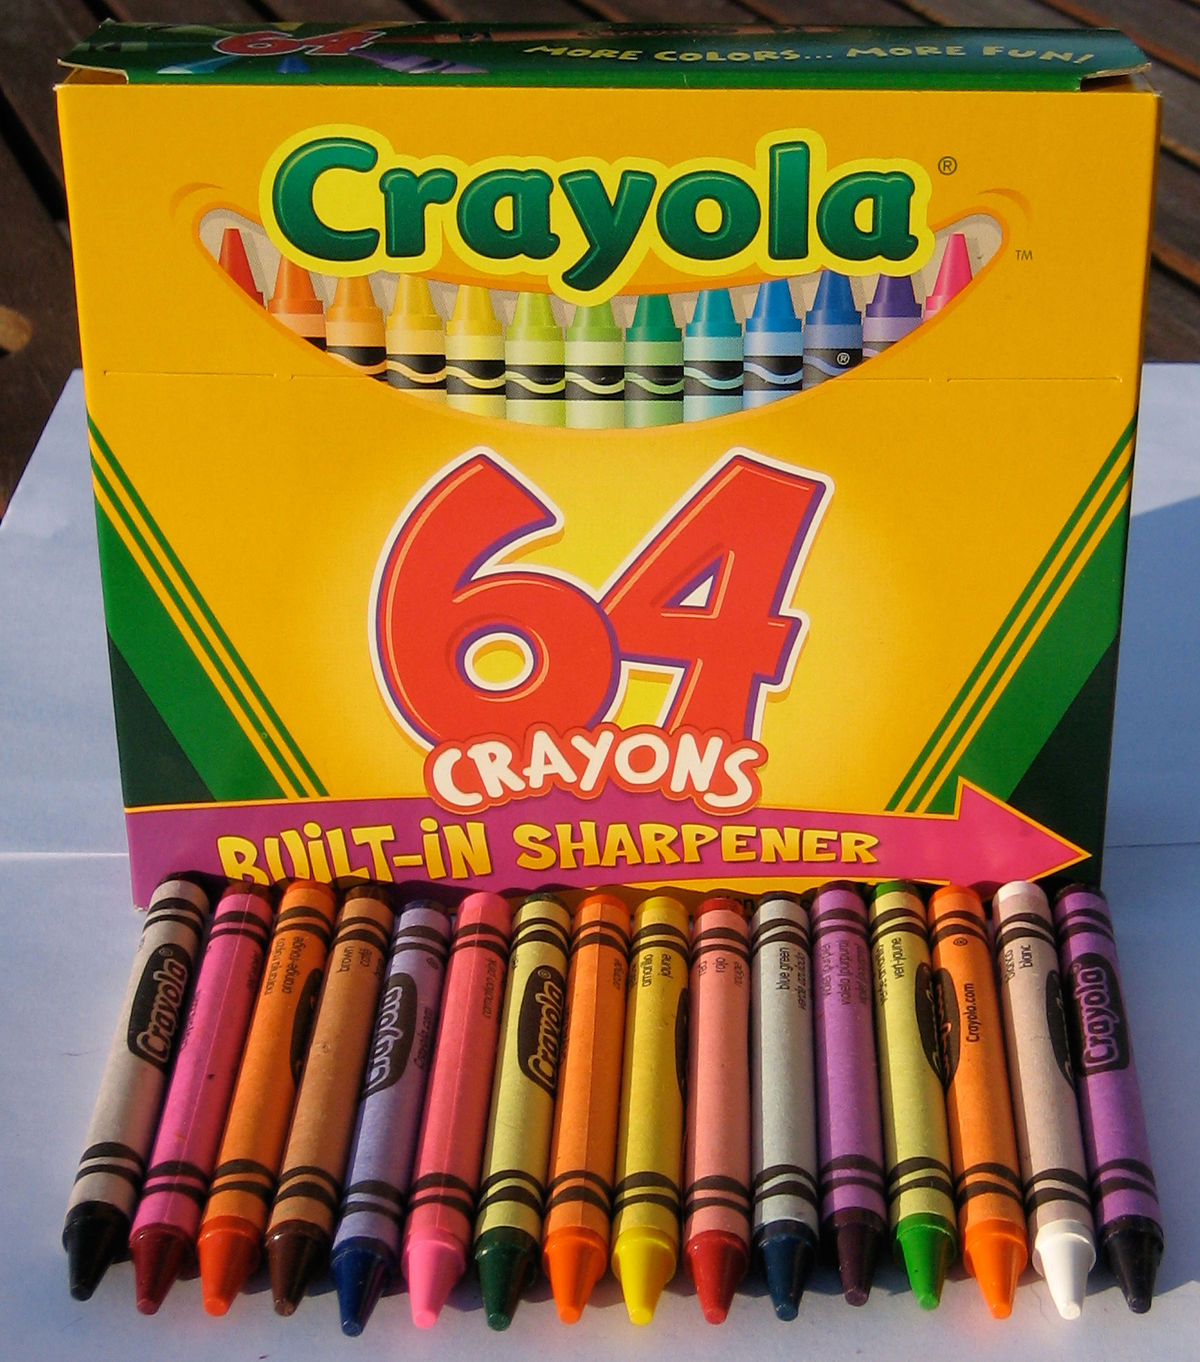 crayola crayon logo font